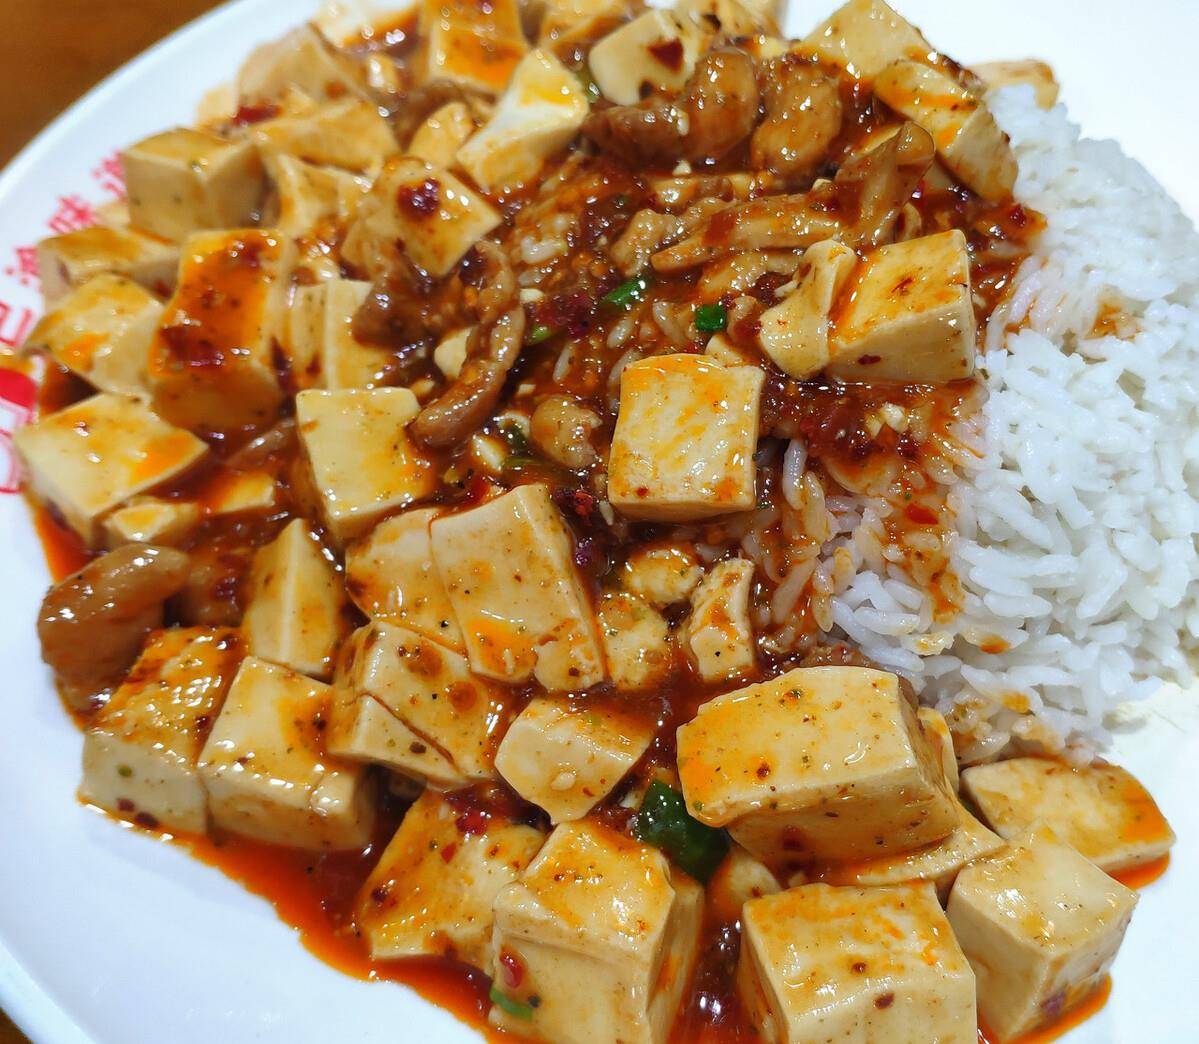 麻婆豆腐盖浇饭,鲜香软嫩,外卖点单第一名,自己做超好吃